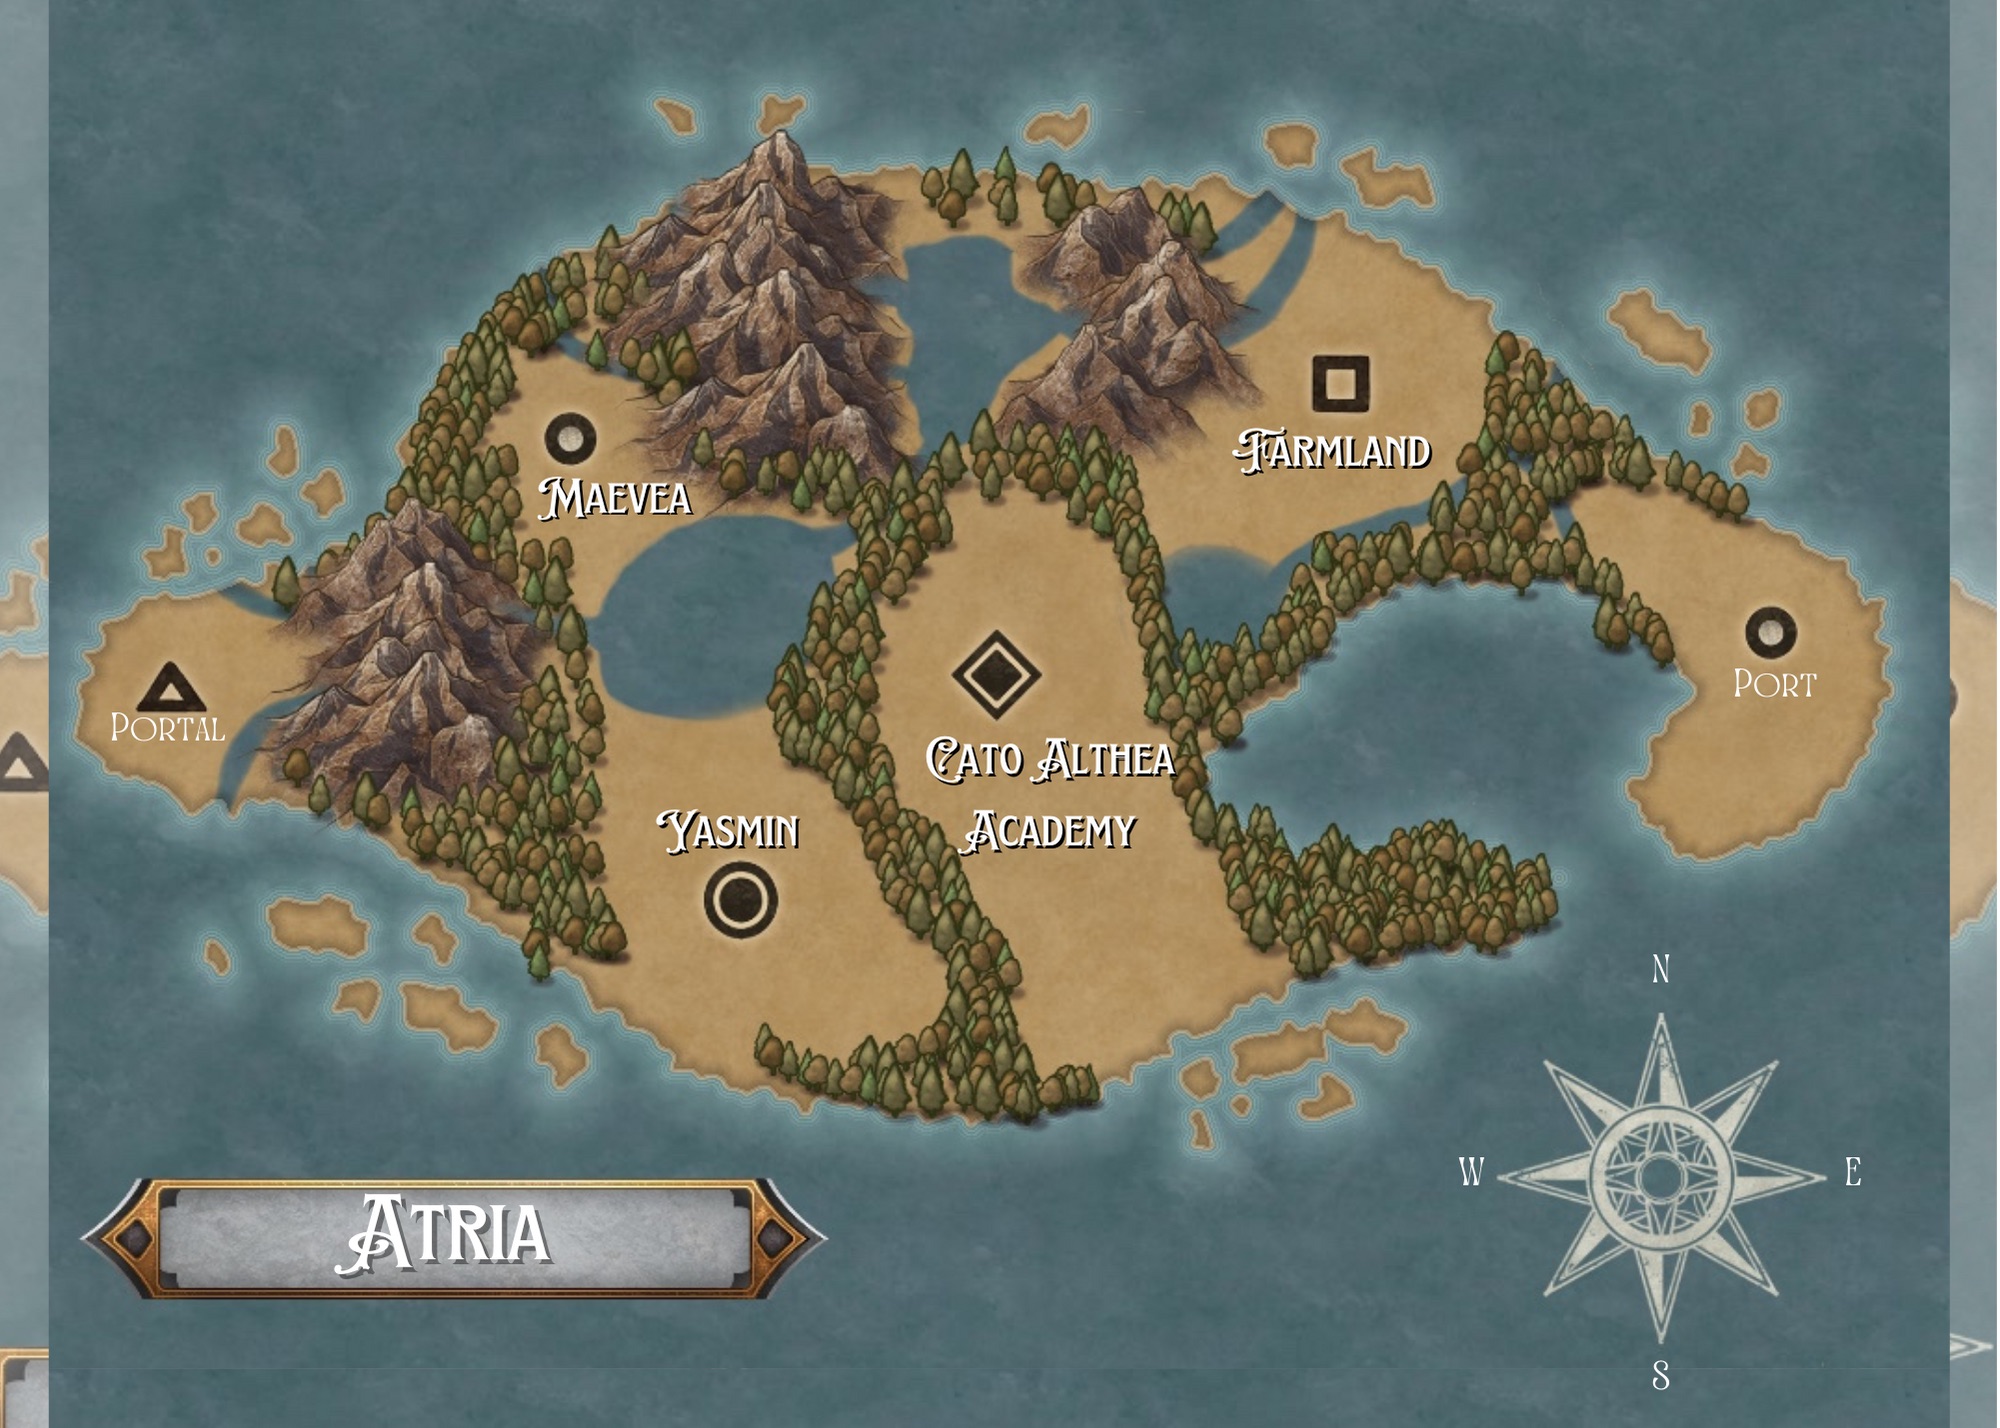 Atria Island Map Base Map Image